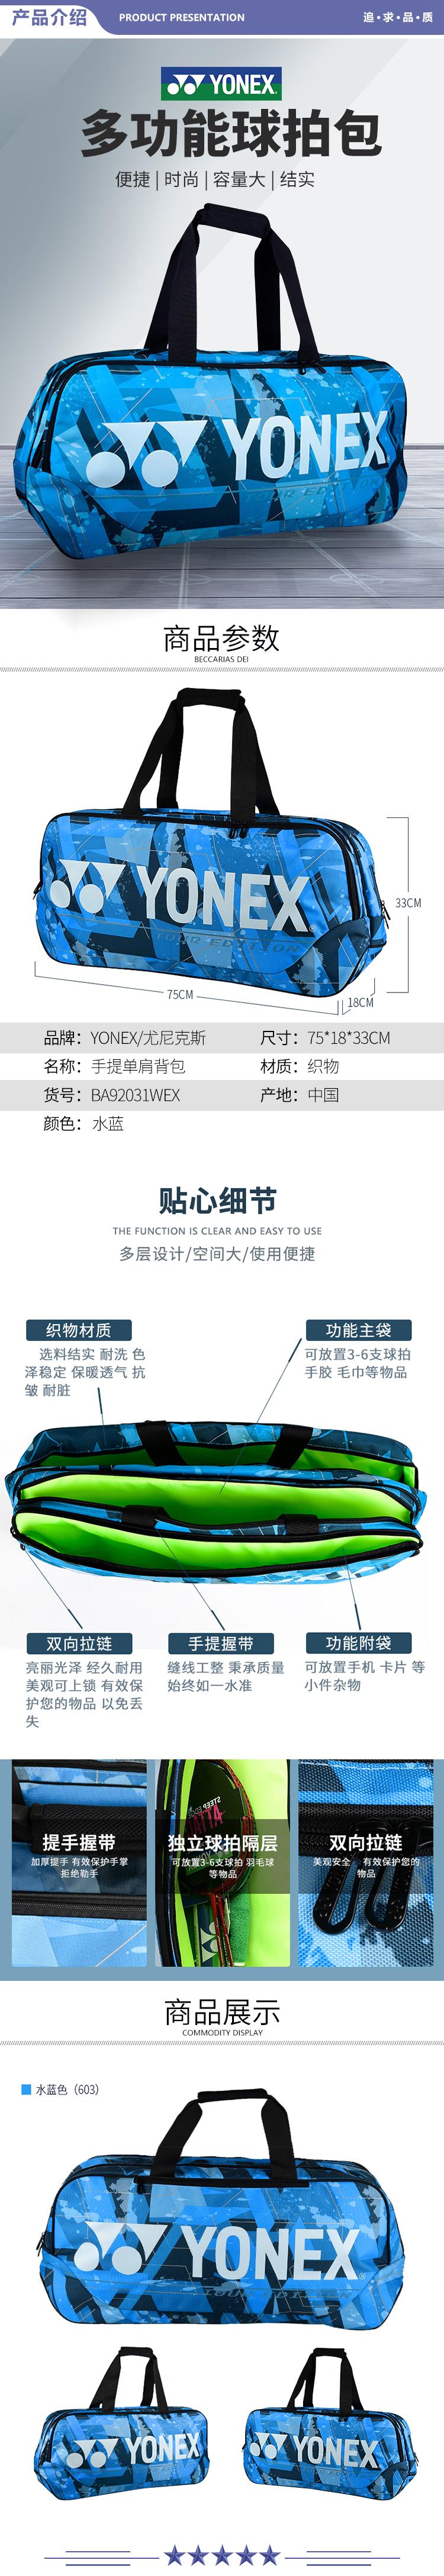 尤尼克斯 BA92031WEX-603 羽毛球包时尚手提大容量运动背包水蓝 2.jpg